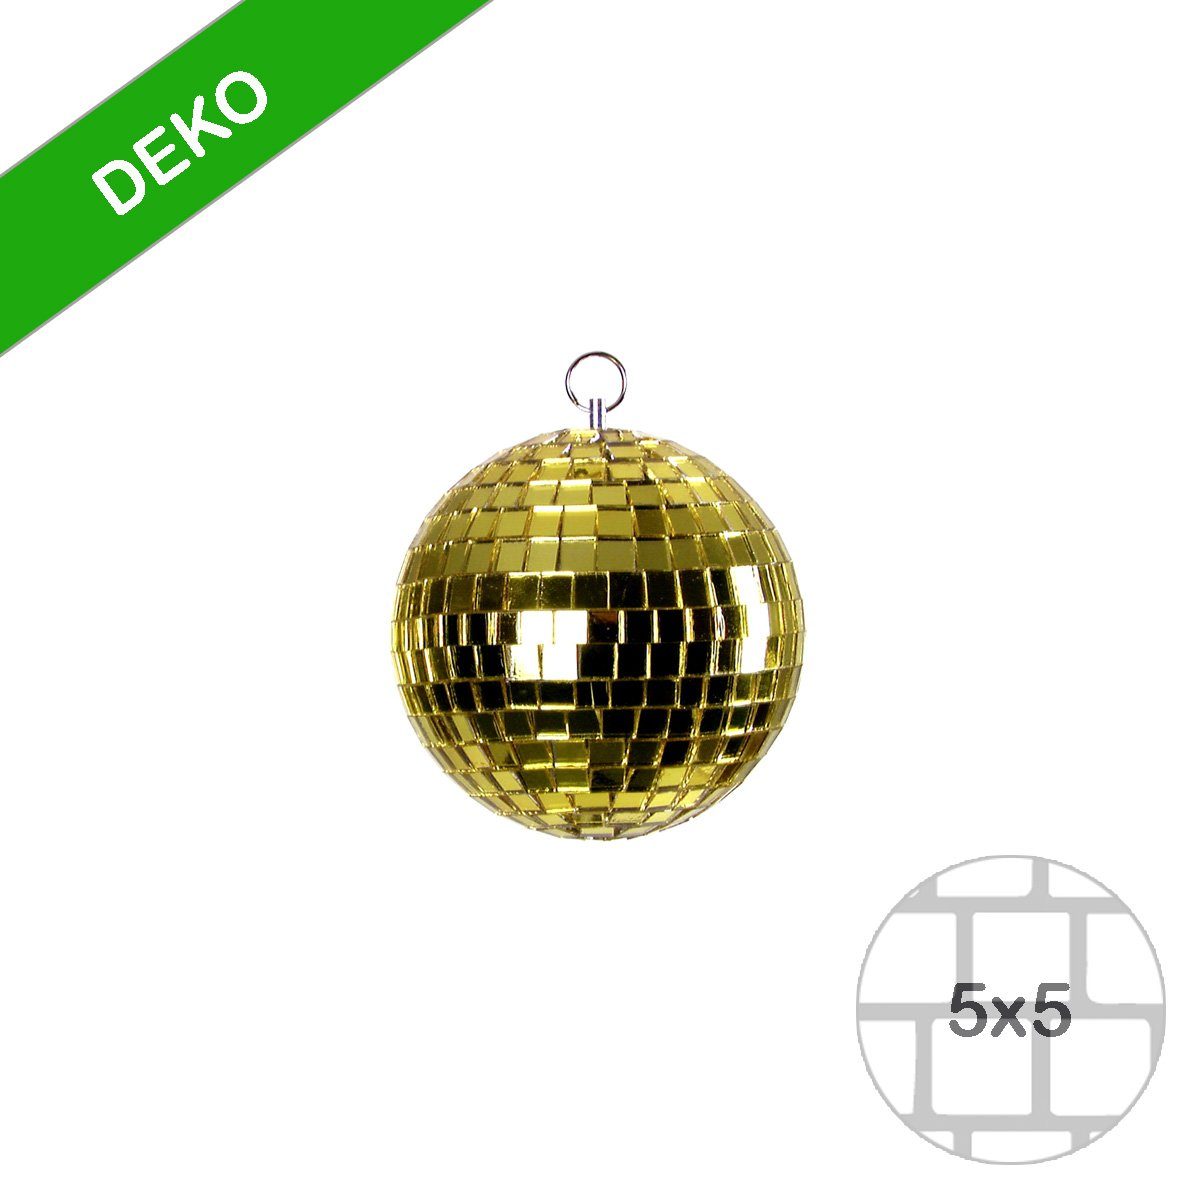 SATISFIRE Discolicht Spiegelkugel Disko gold Discokugel Party Mini coole Deko 5cm